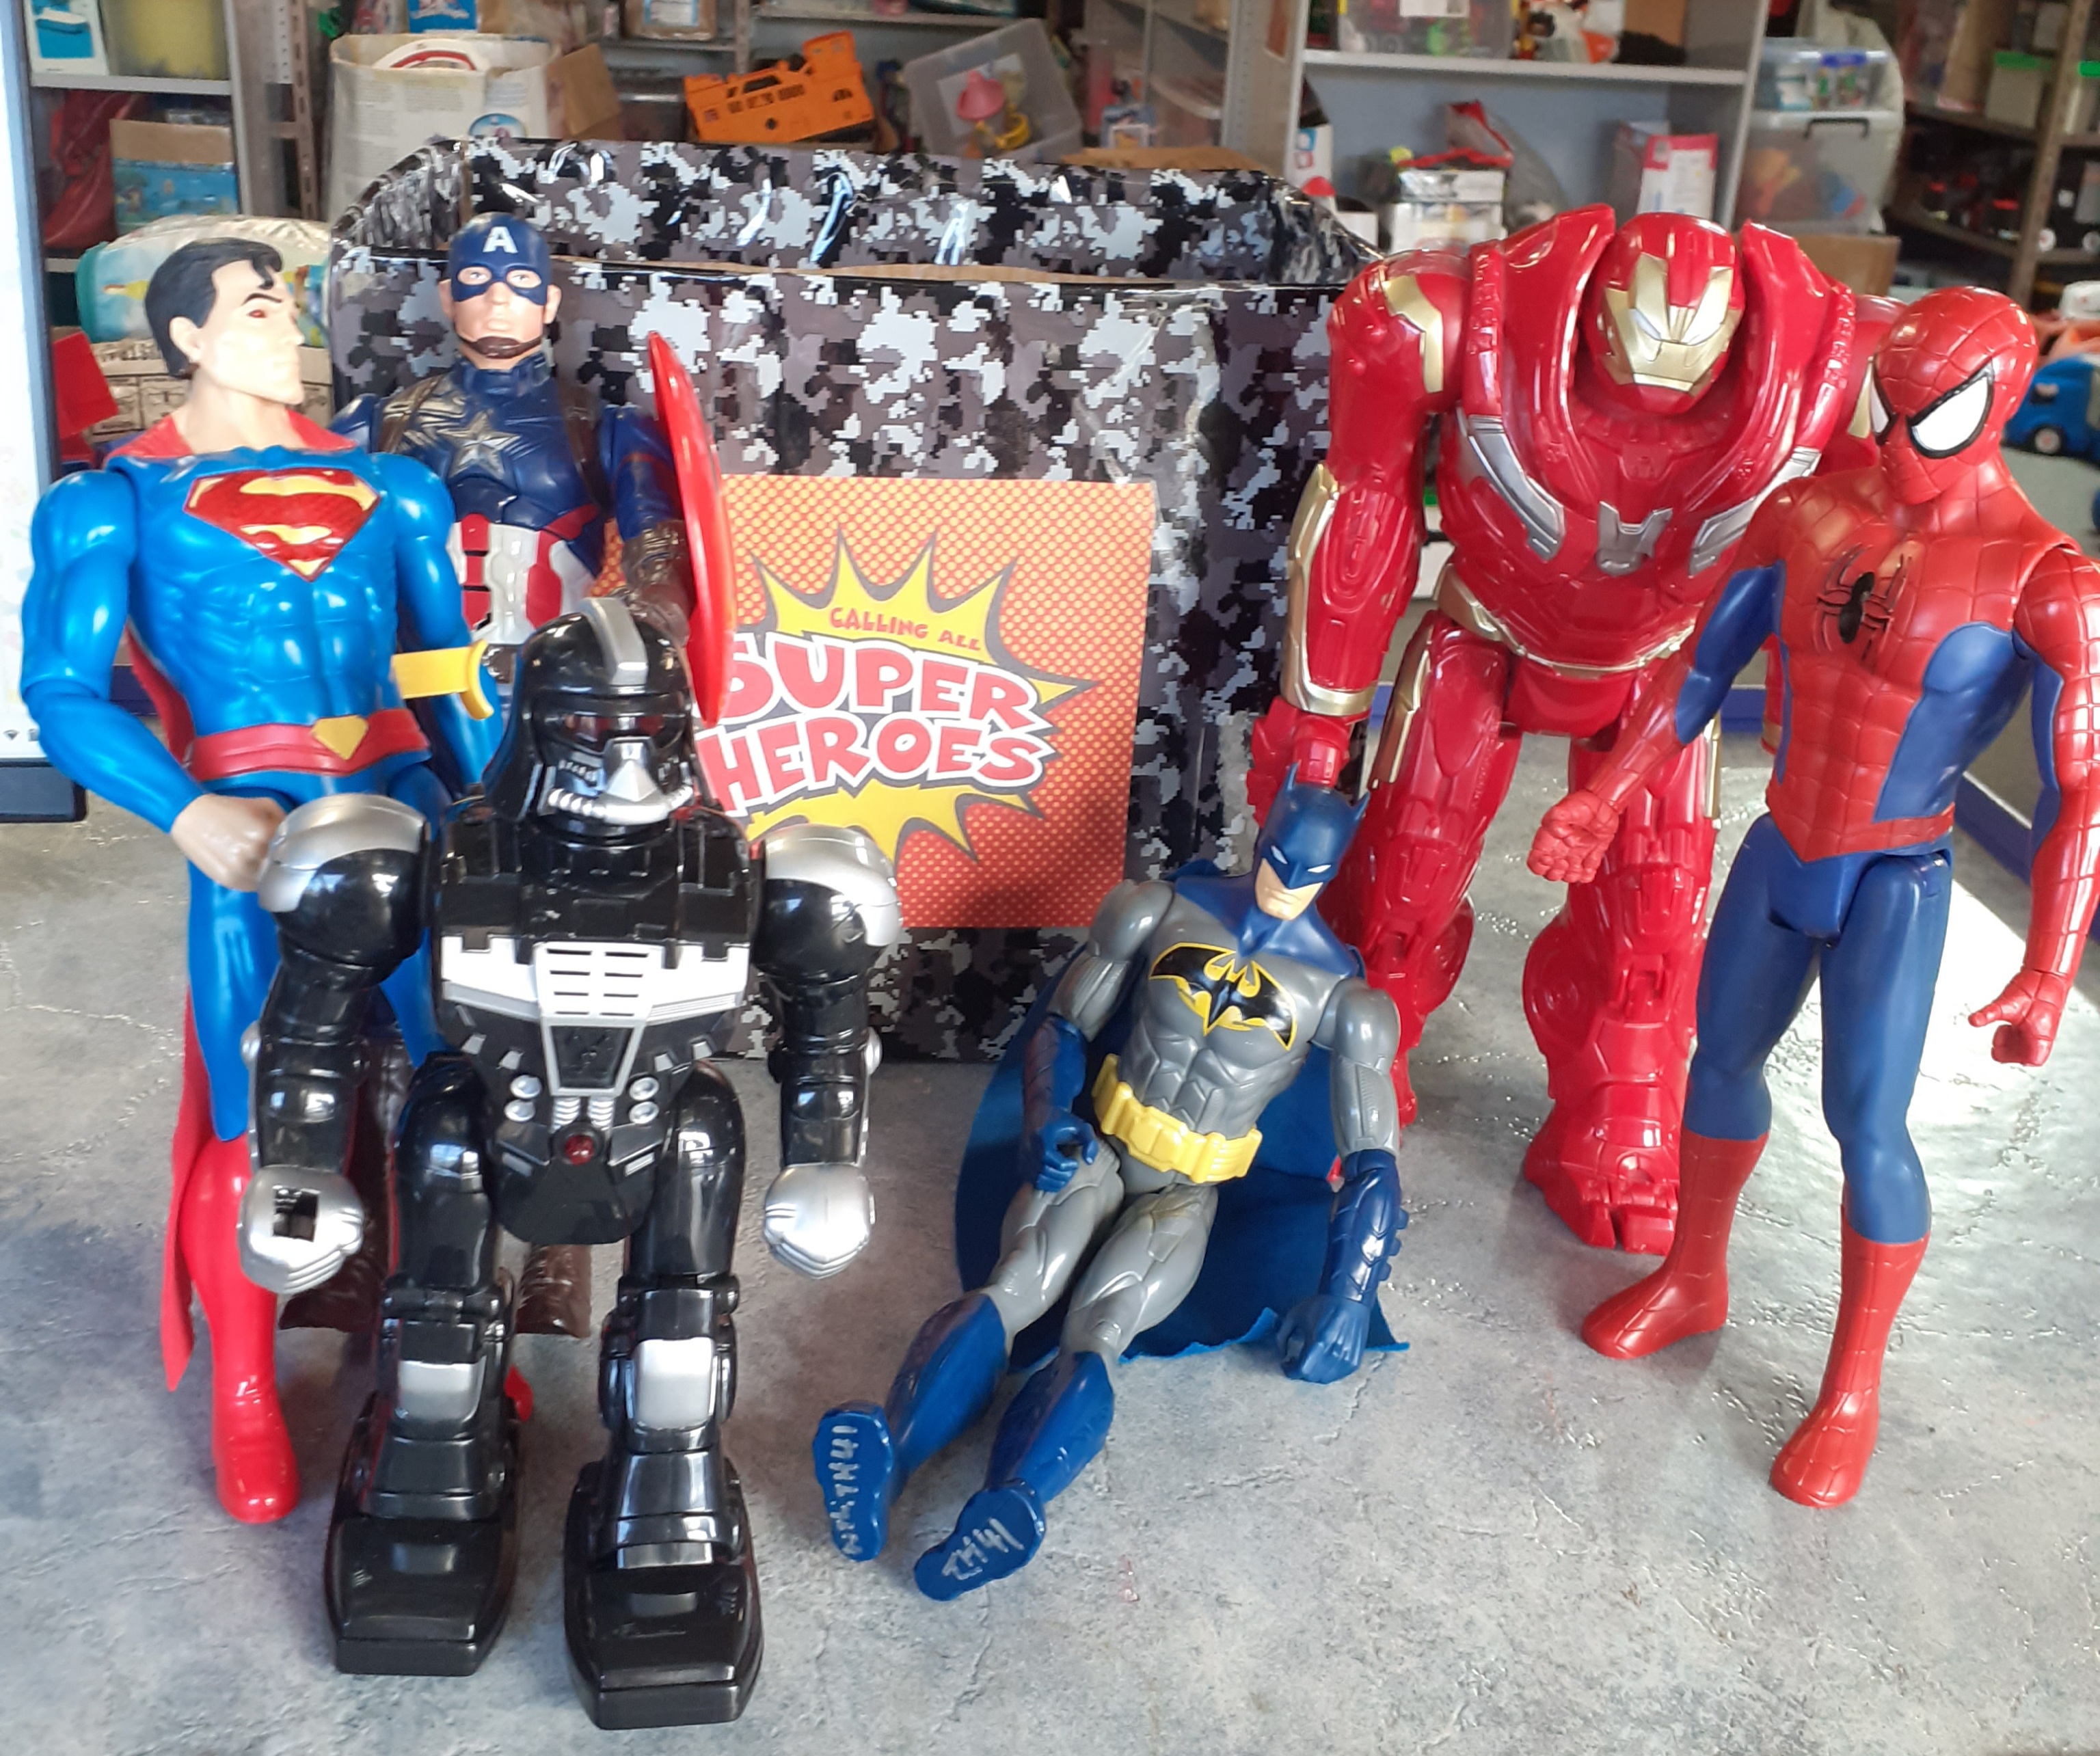 Super Heroes - Action figures 